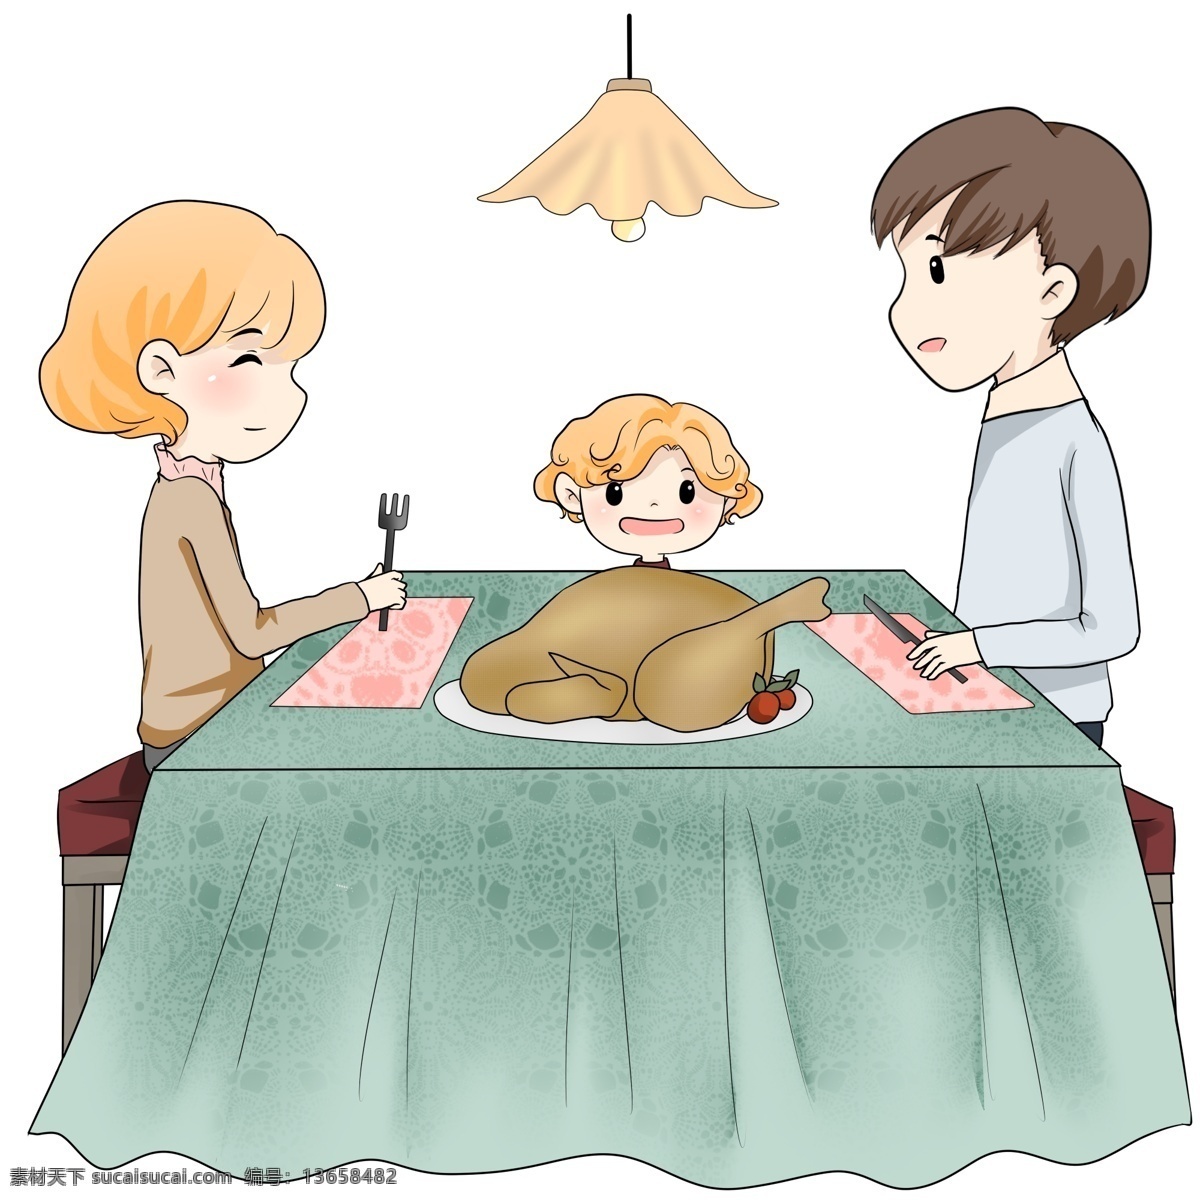 手绘 感恩节 一家人 吃 火鸡 插画 场景 火鸡大餐 感恩节美食 卡通 人物 感恩生活